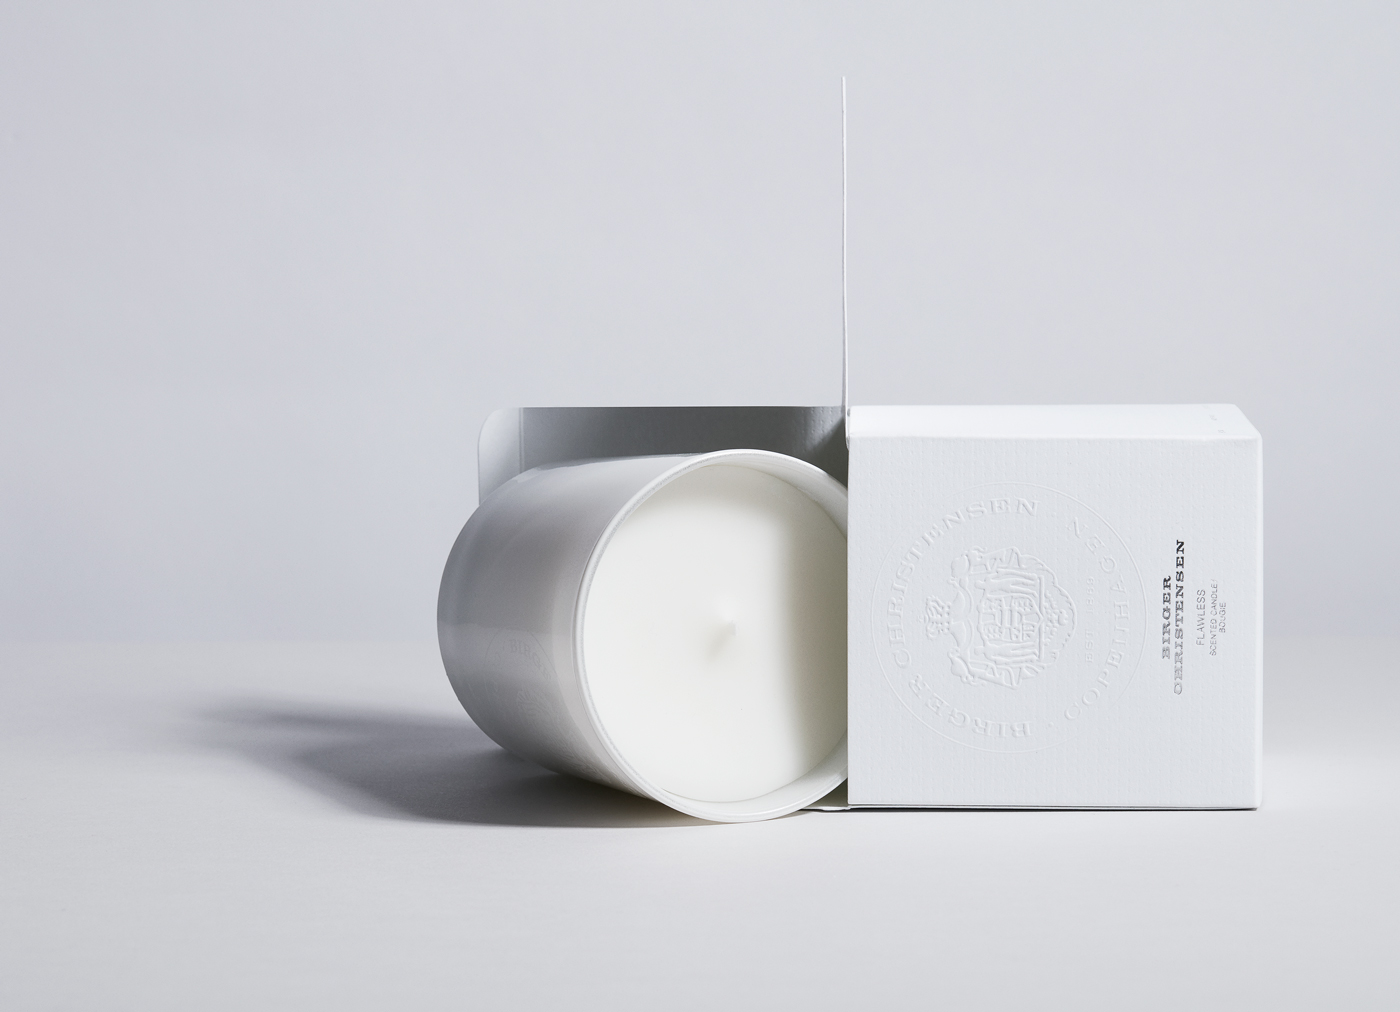 Birger Christensen – Packaging